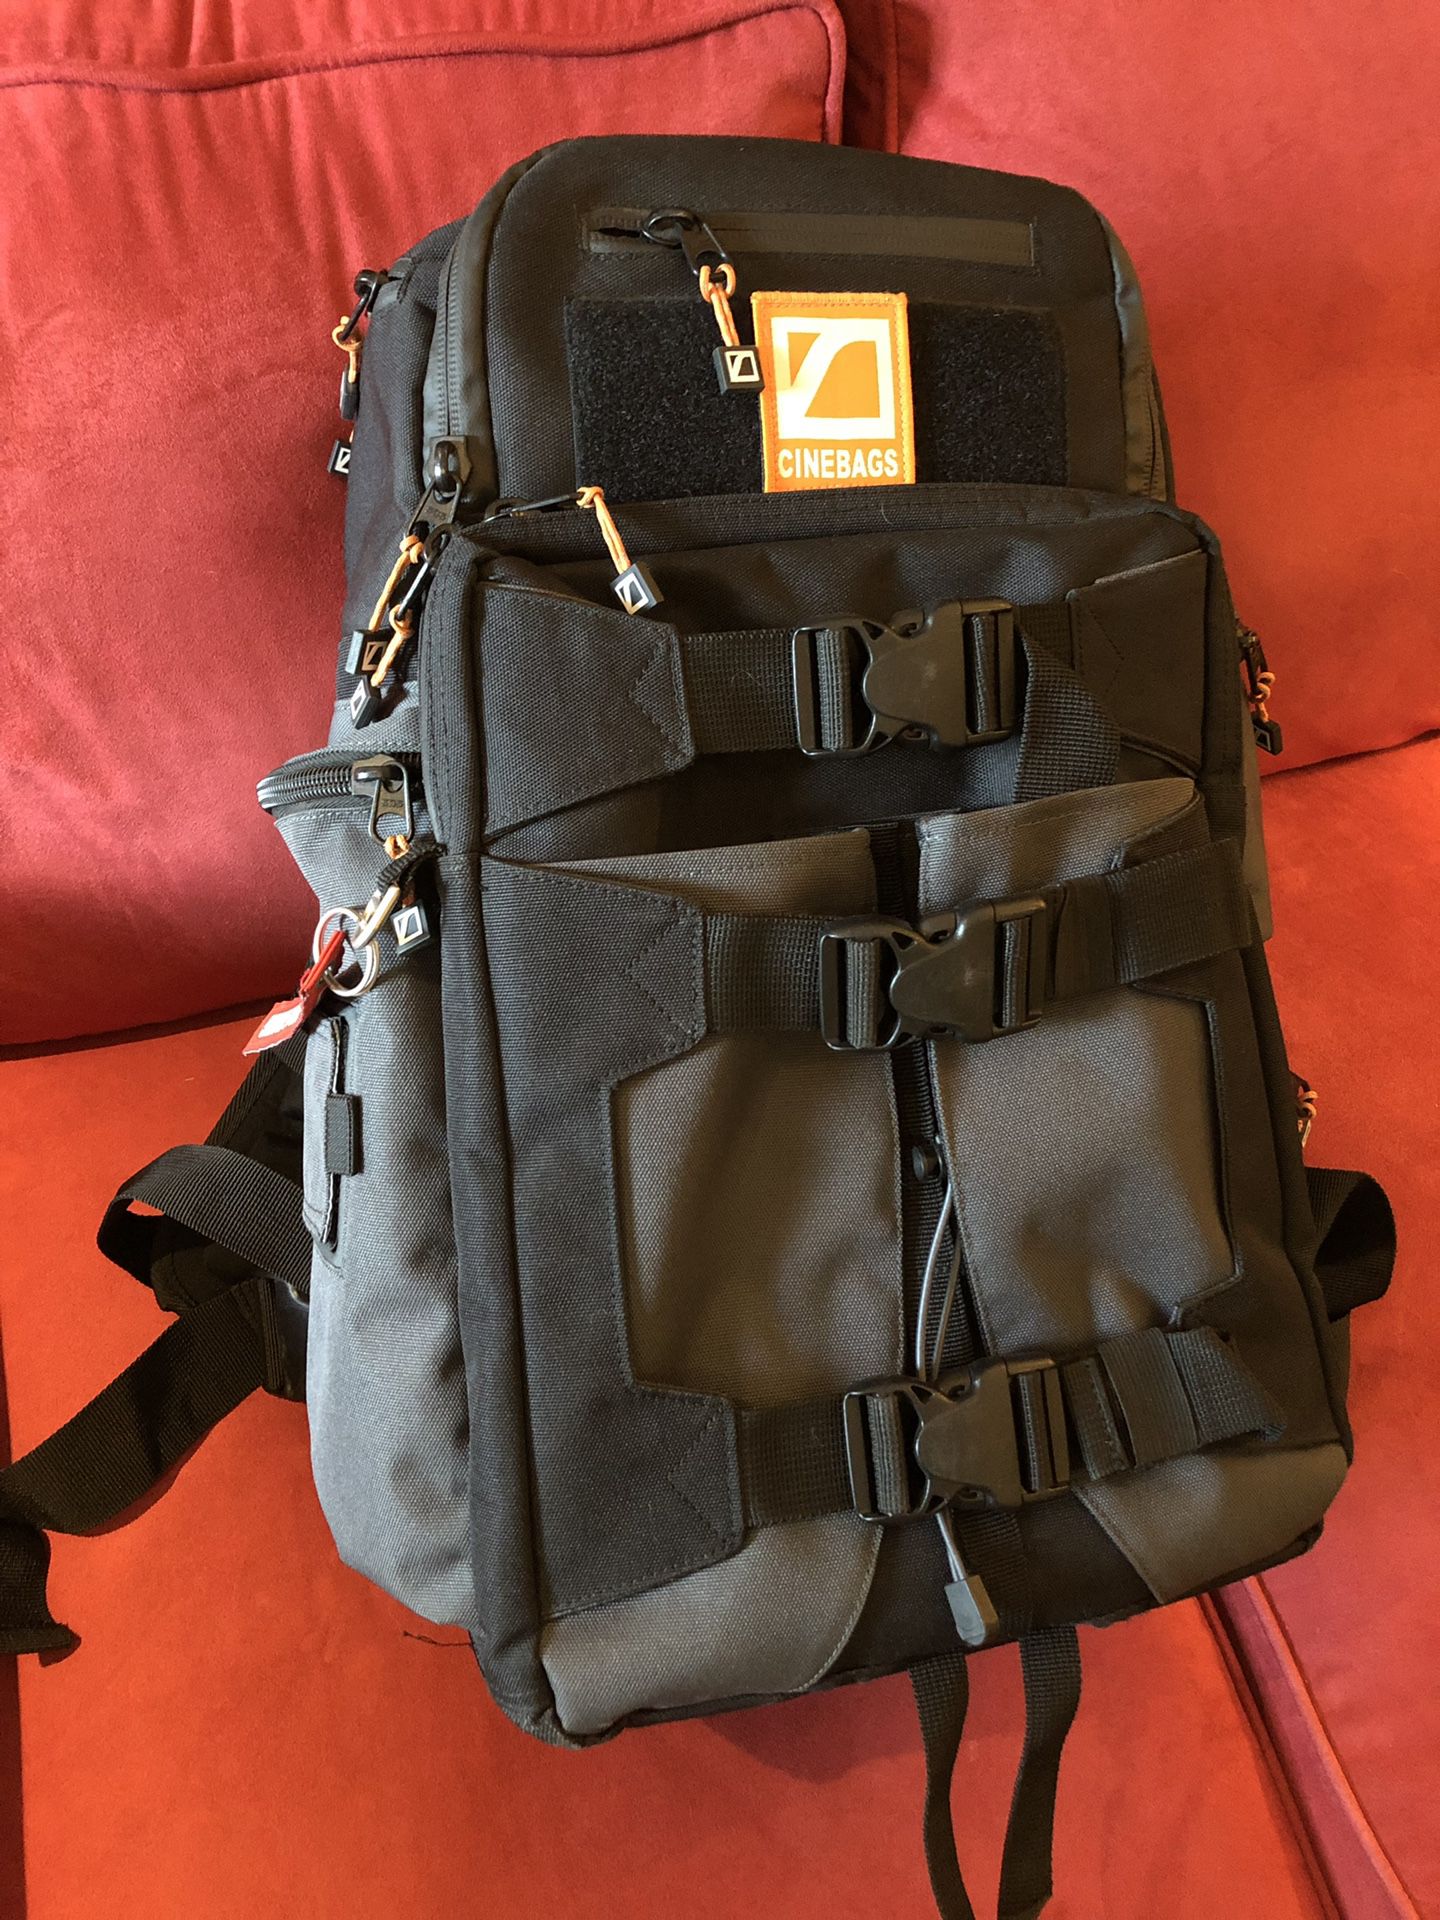 Cinebags CB25 Revolution Backpack